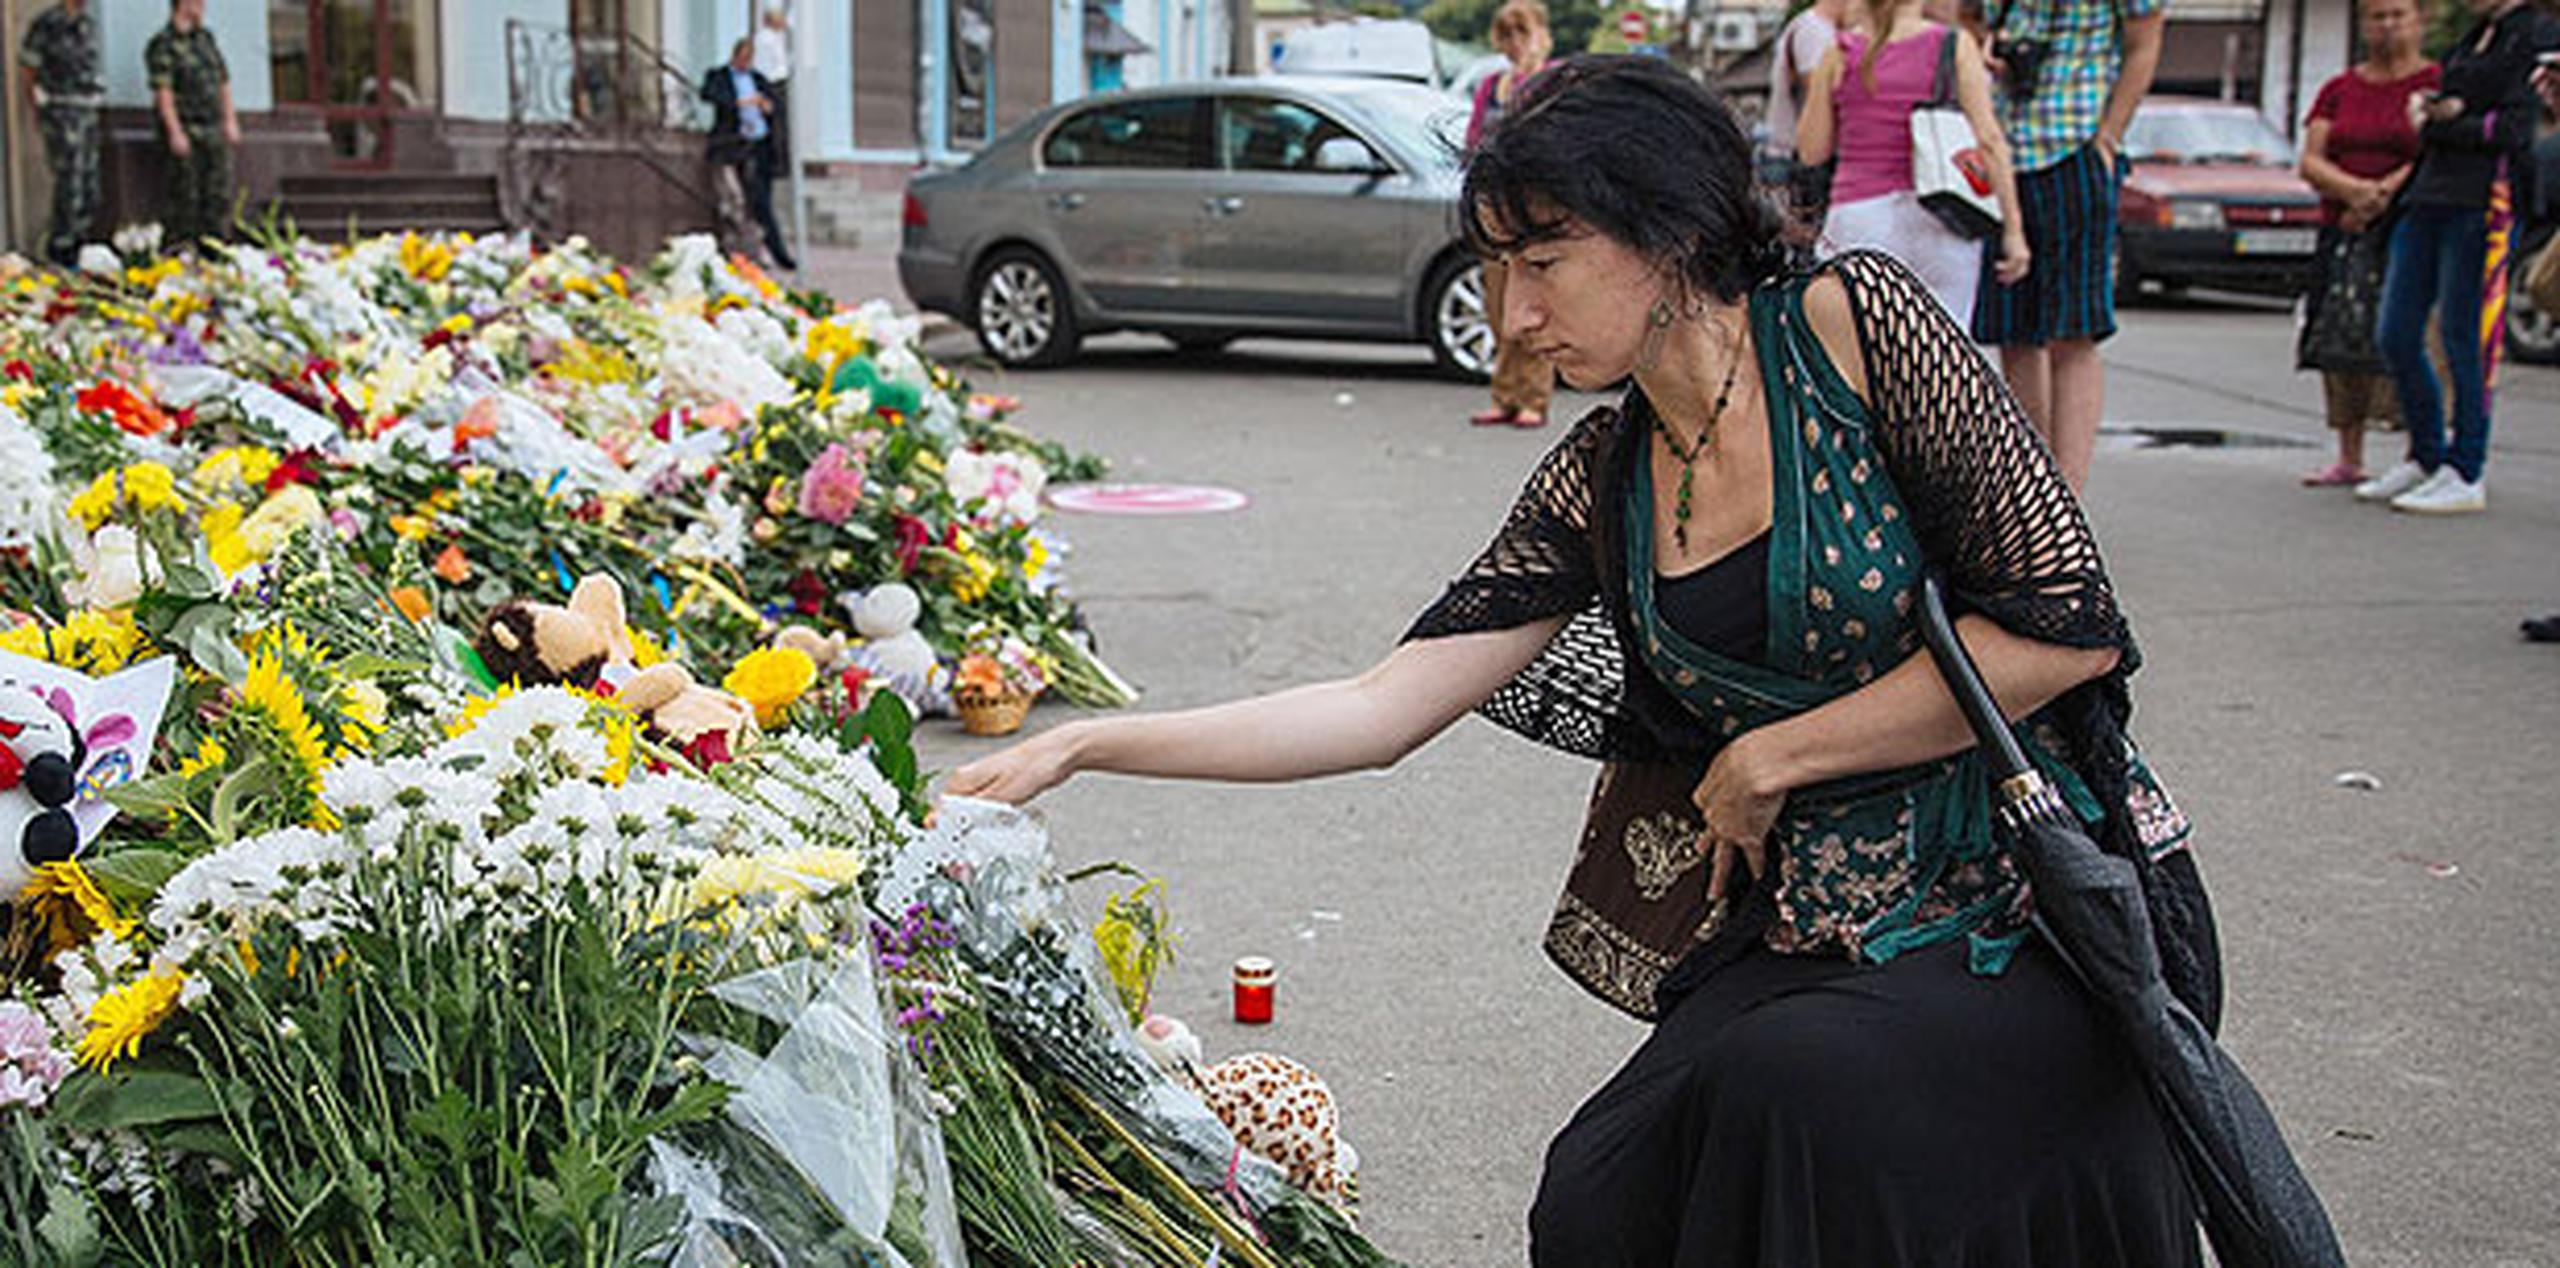 Viajeros que pasaban por el aeropuerto de Schiphol dejaban flores en recuerdo de las víctimas. (AP)